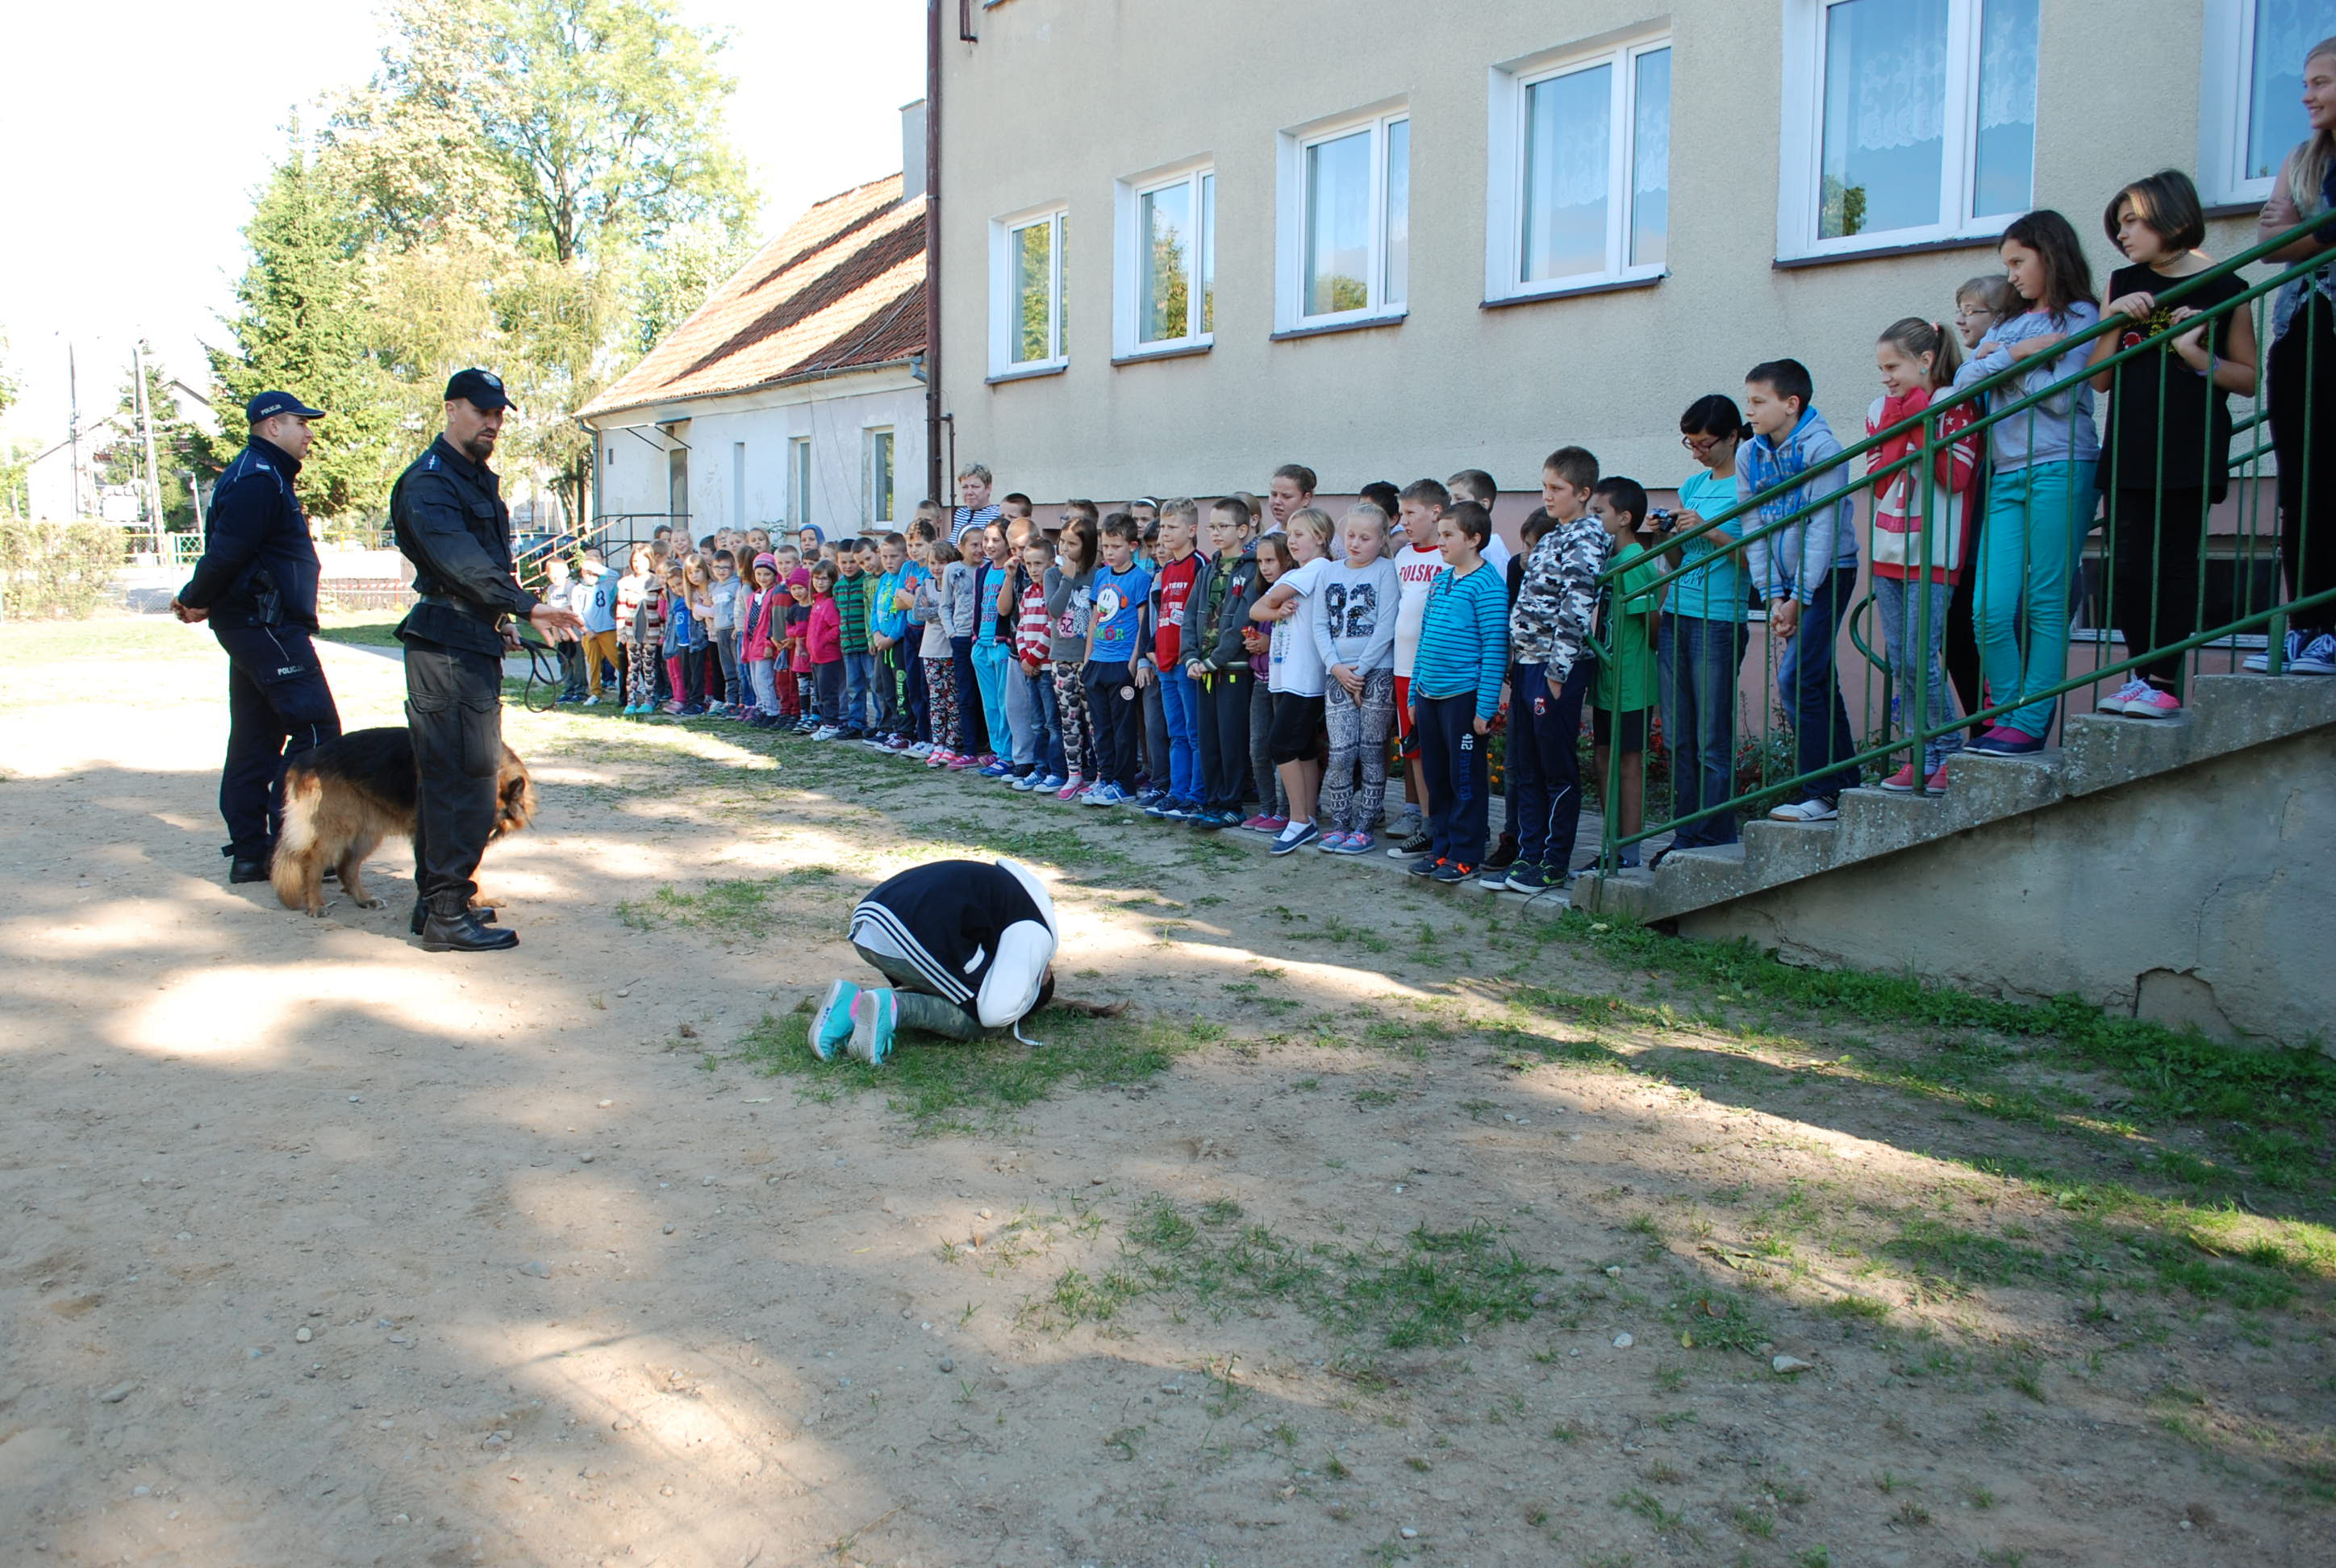 Przewodnik psa podczas spotkabia z uczniami w Budrach